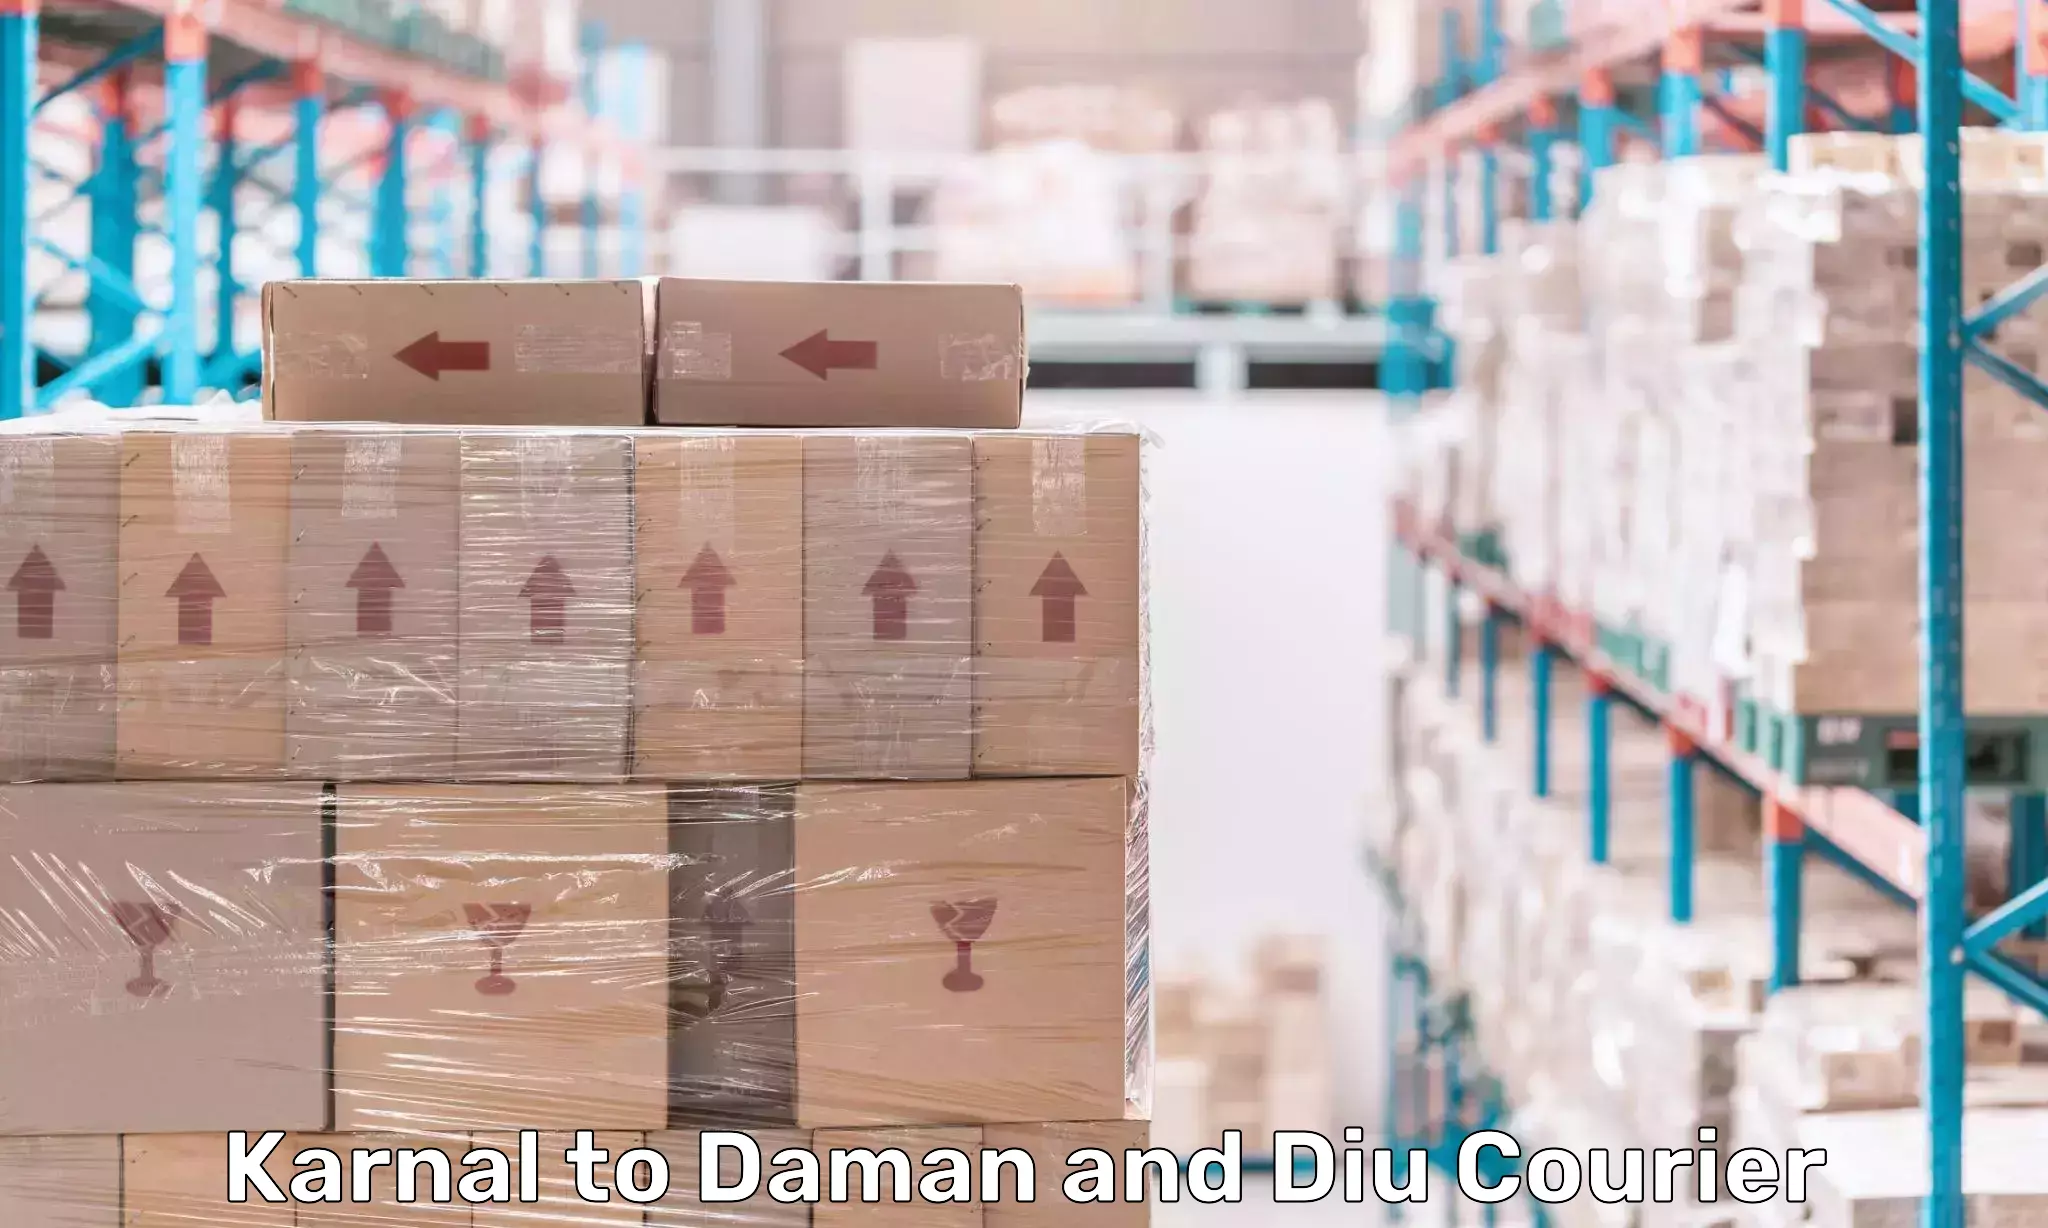 Courier service partnerships Karnal to Daman and Diu